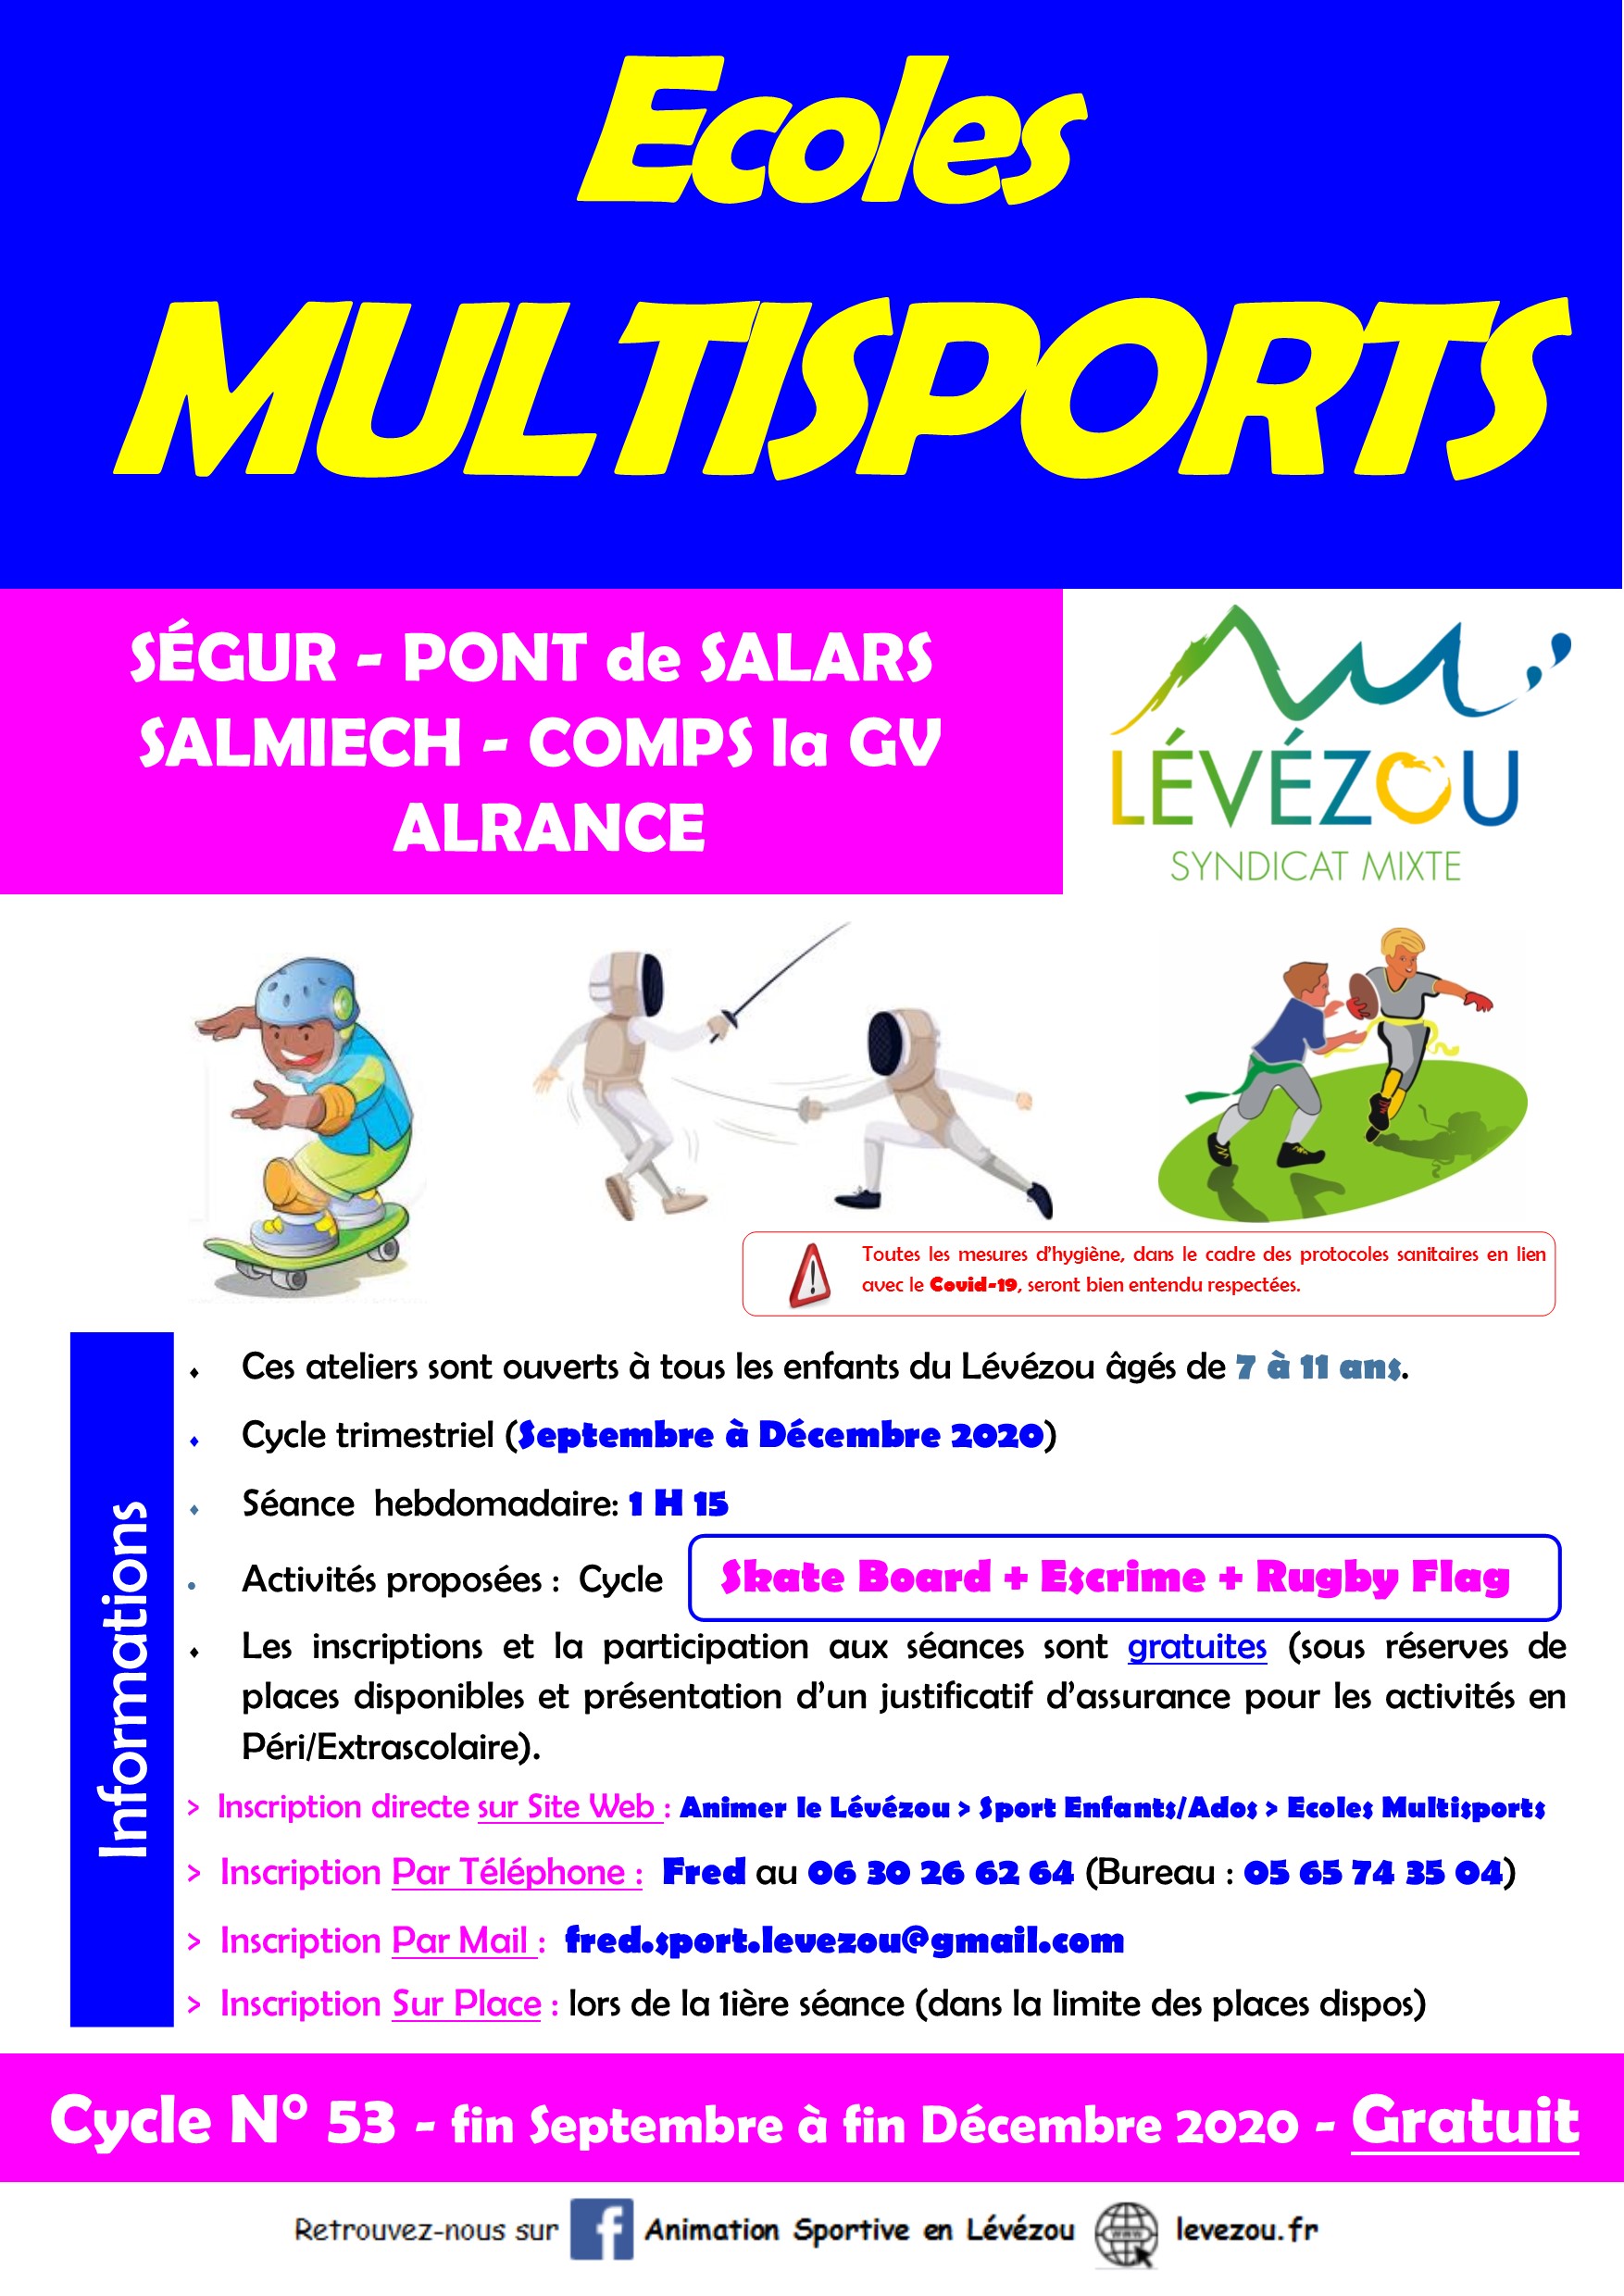 ecoles multi sports - rentrée septembre 2020 - Lévézéou